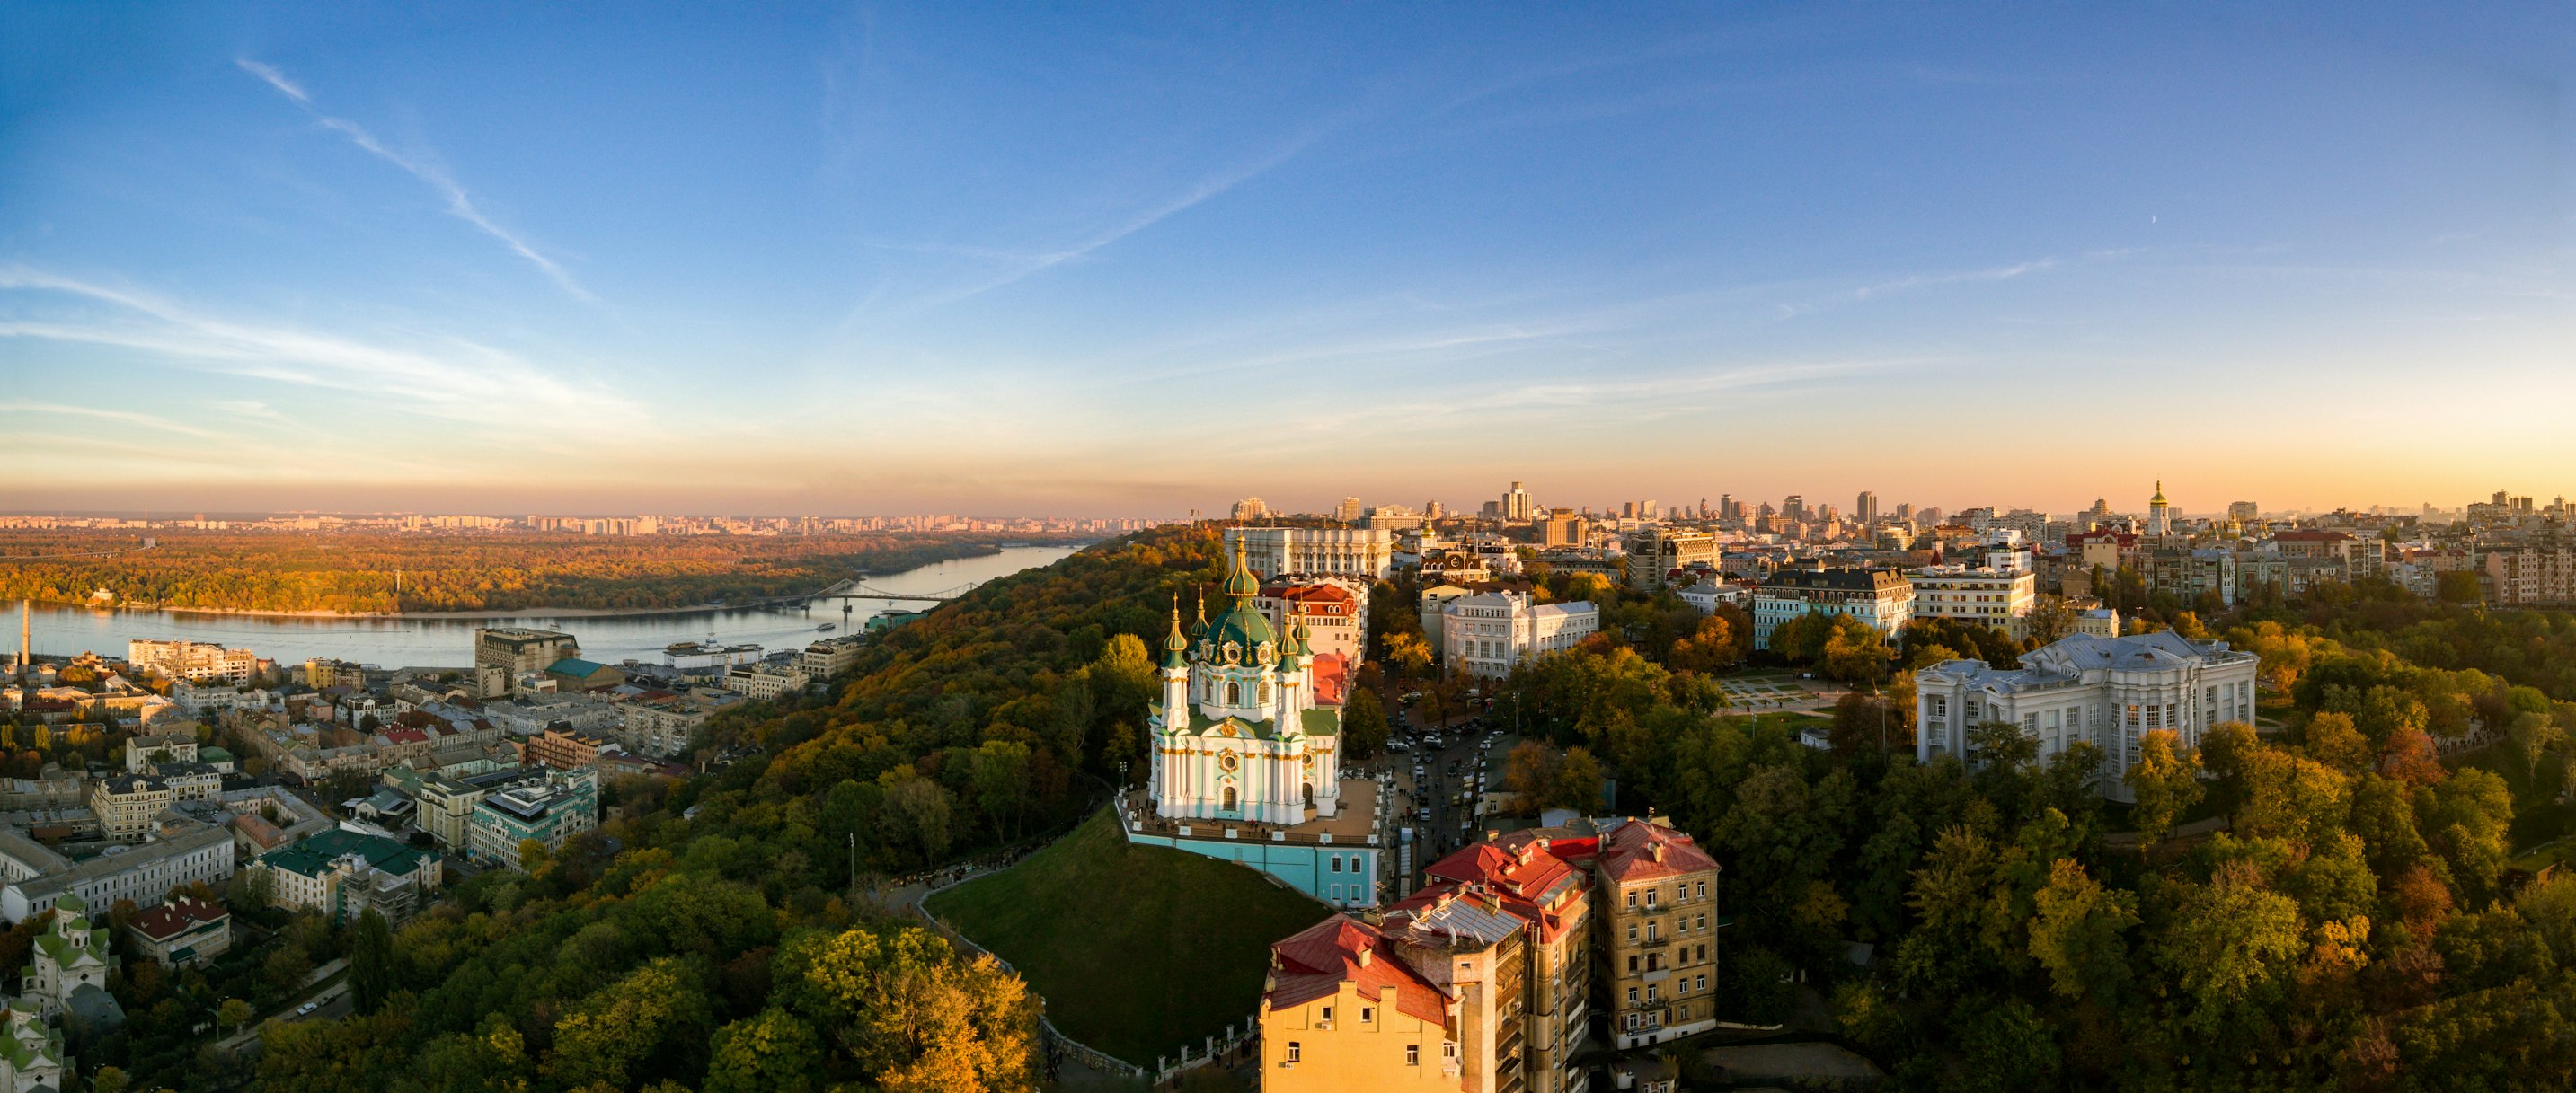 Kyiv landscape